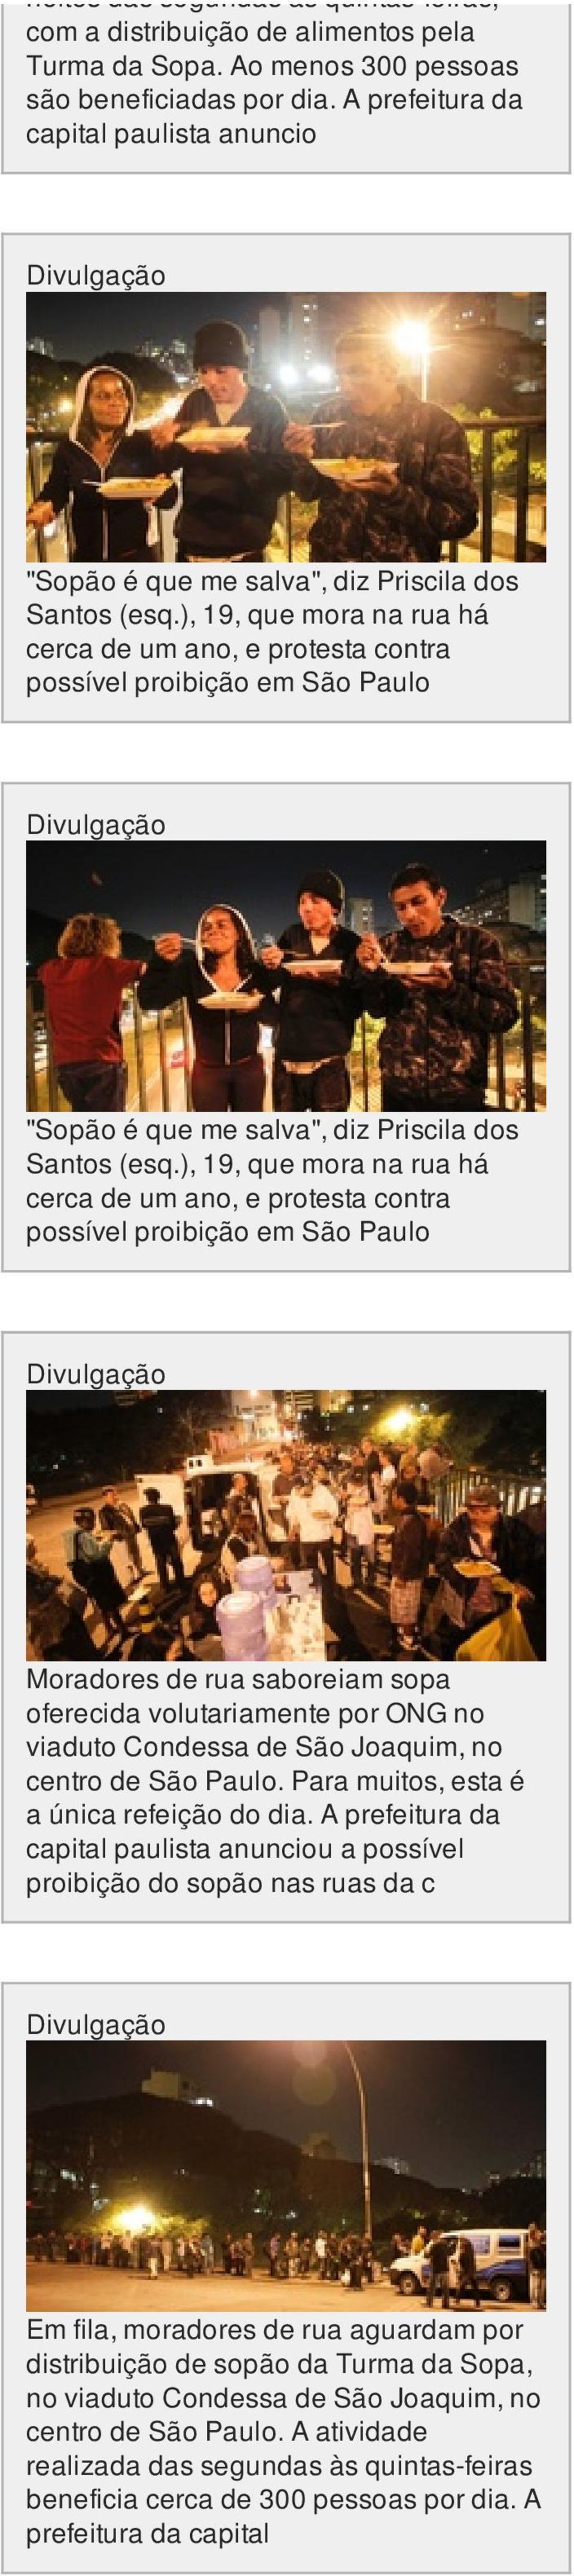 ), 19, que mora na rua há cerca de um ano, e protesta contra possível proibição em São Paulo "Sopão é que me salva", diz Priscila dos Santos (esq.